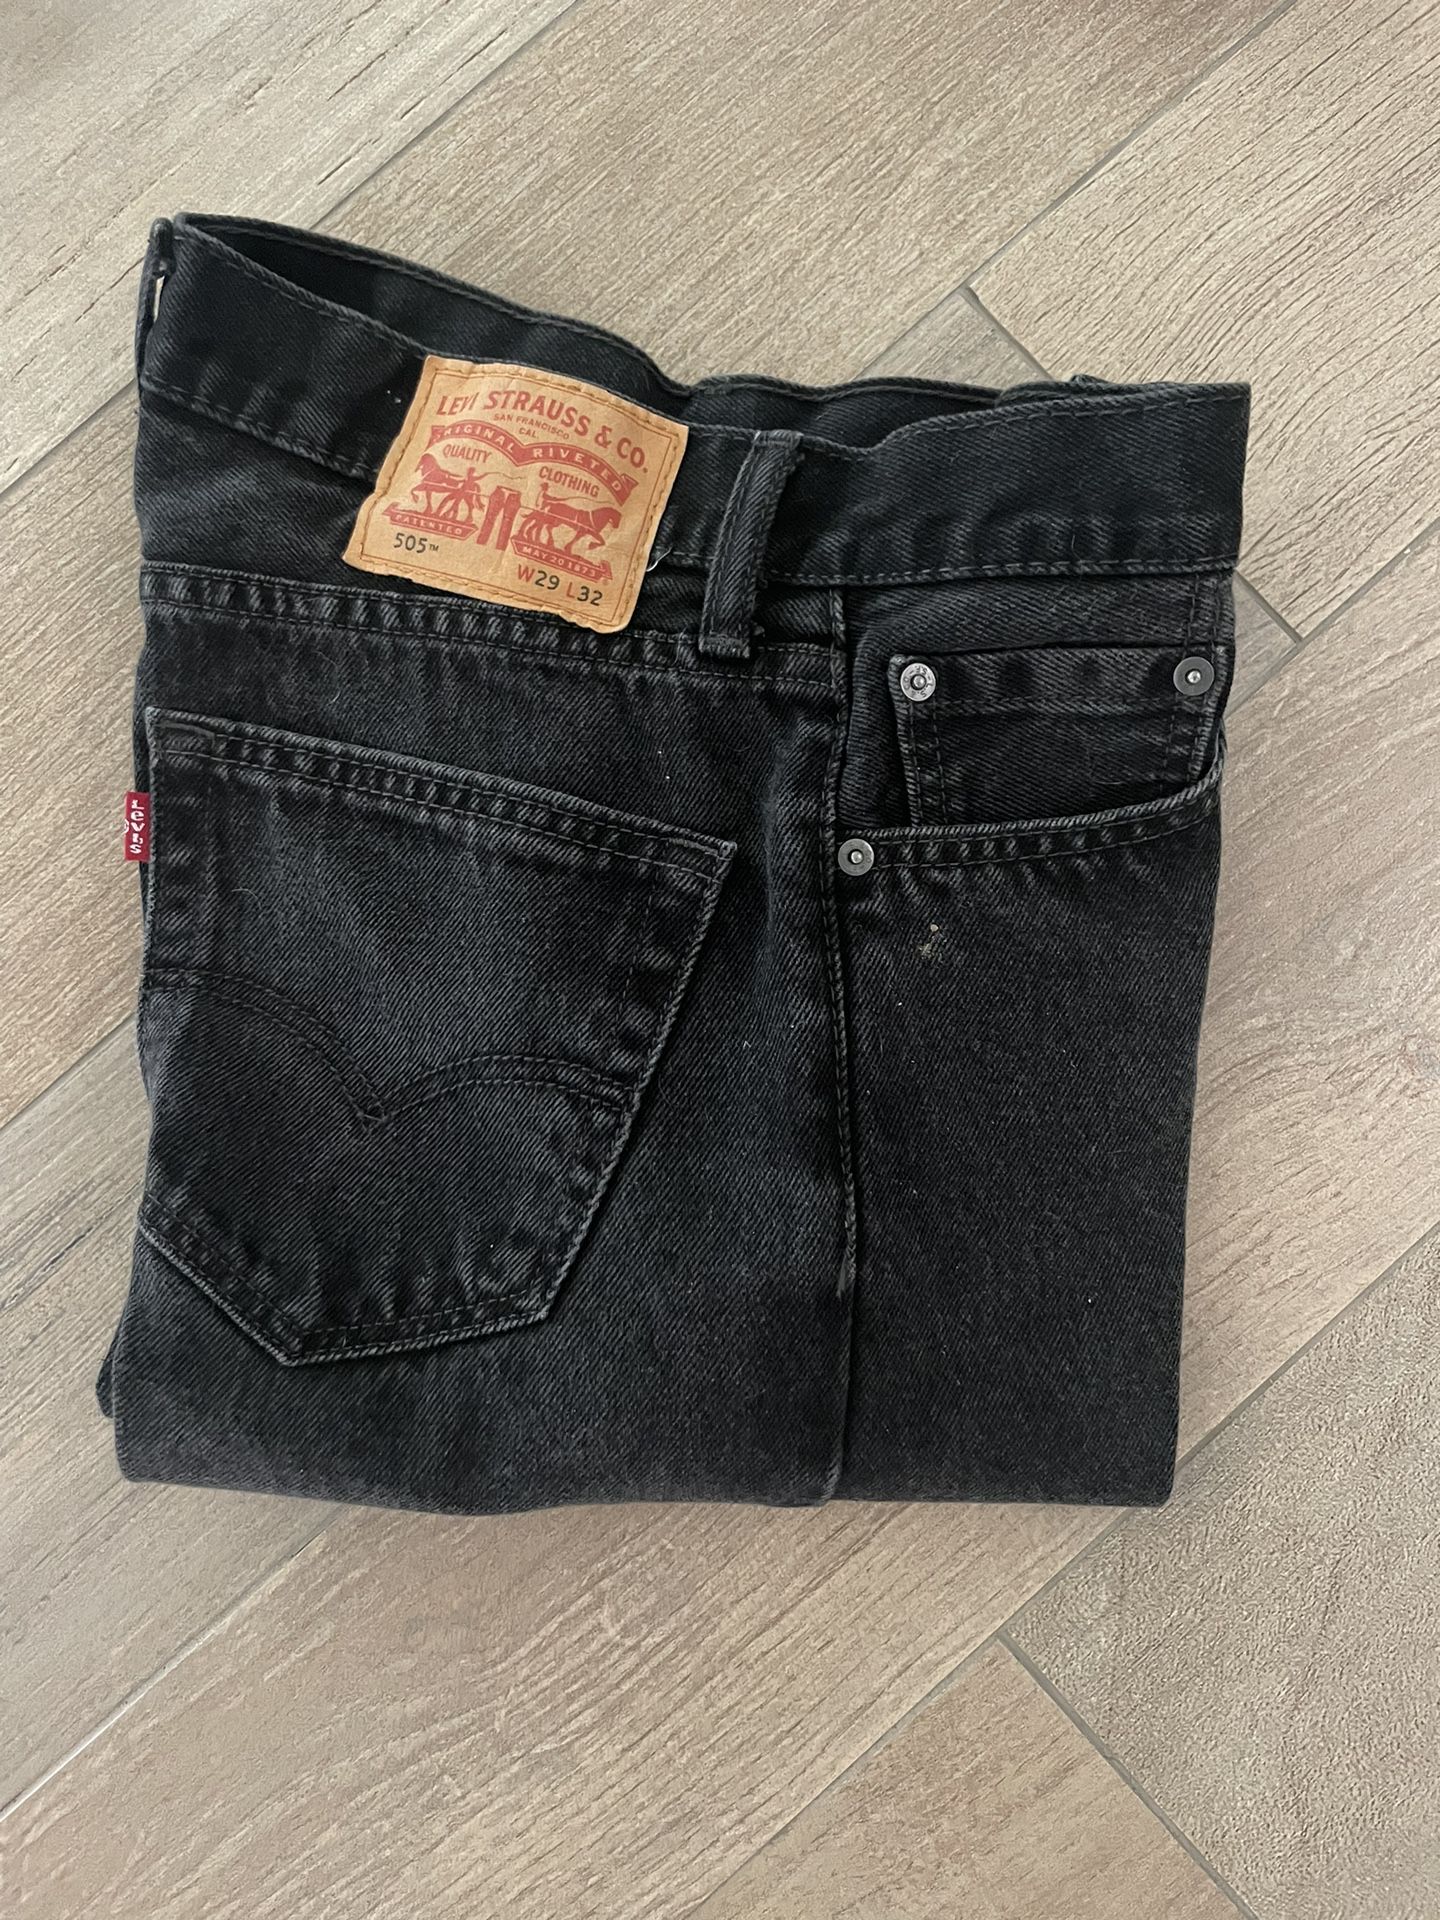 Levi’s vintage jeans 